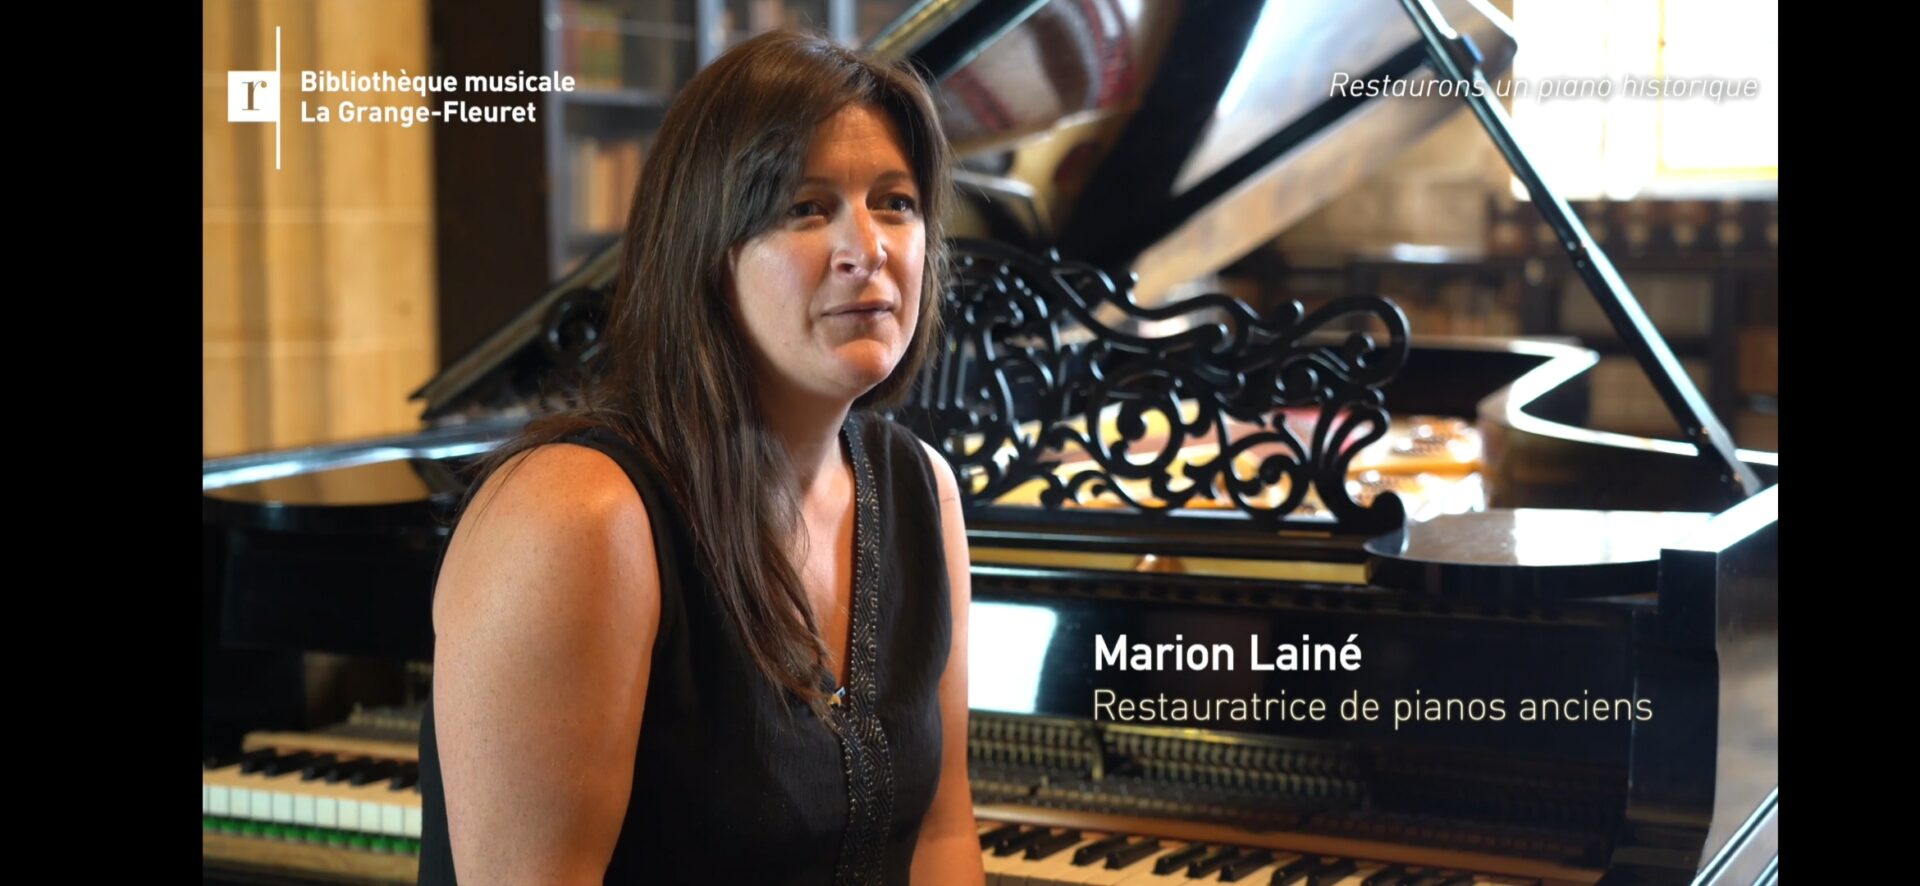 Marion Lainé, restauratrice de pianos anciens parle pour teaser Bibliothèque La Grange Fleuret pour restaurer Steinway de concert